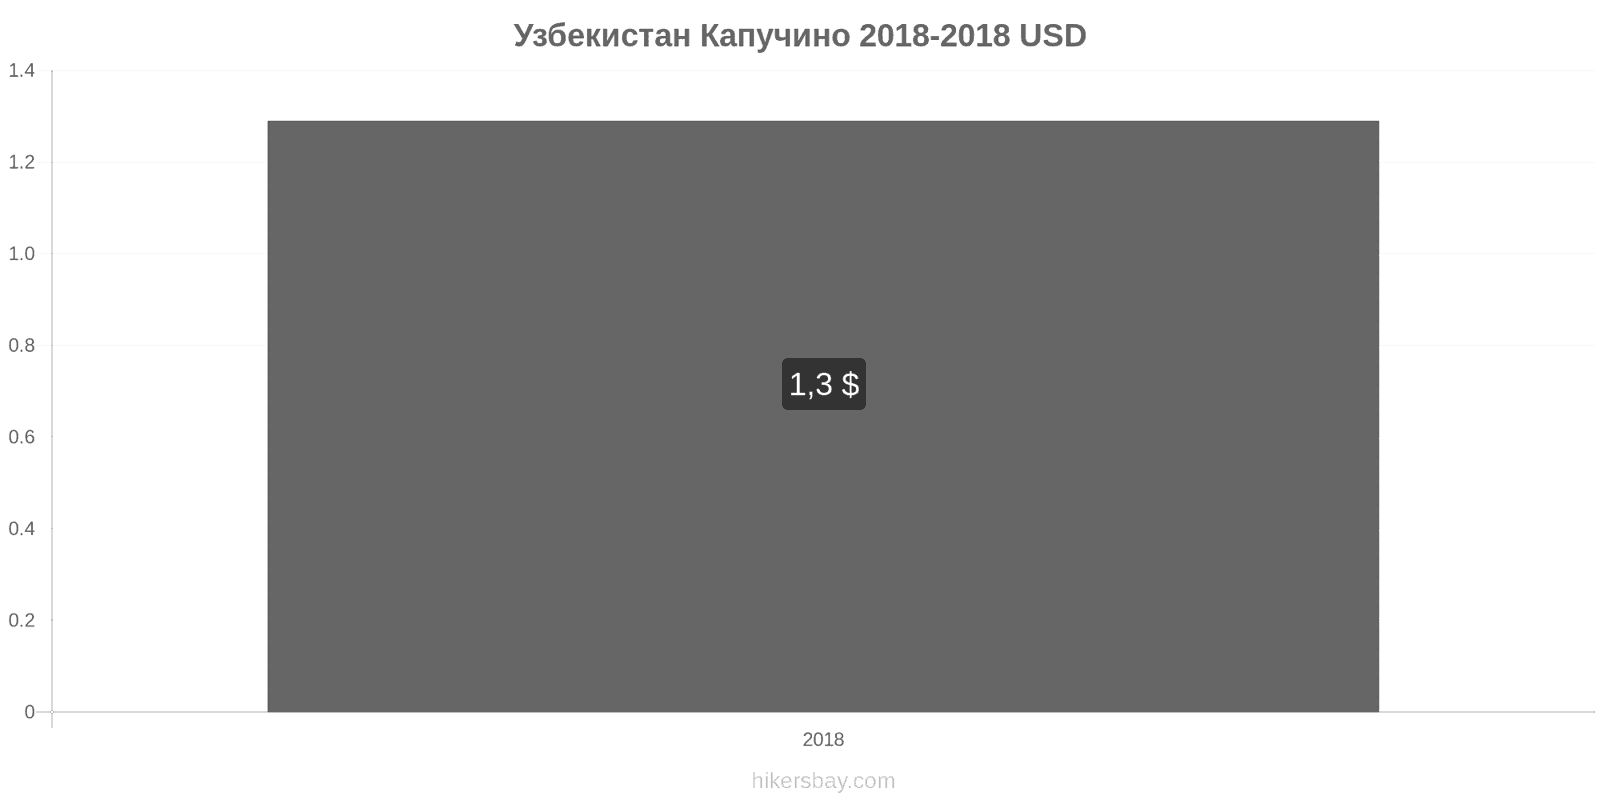 Узбекистан изменения цен Капучино hikersbay.com